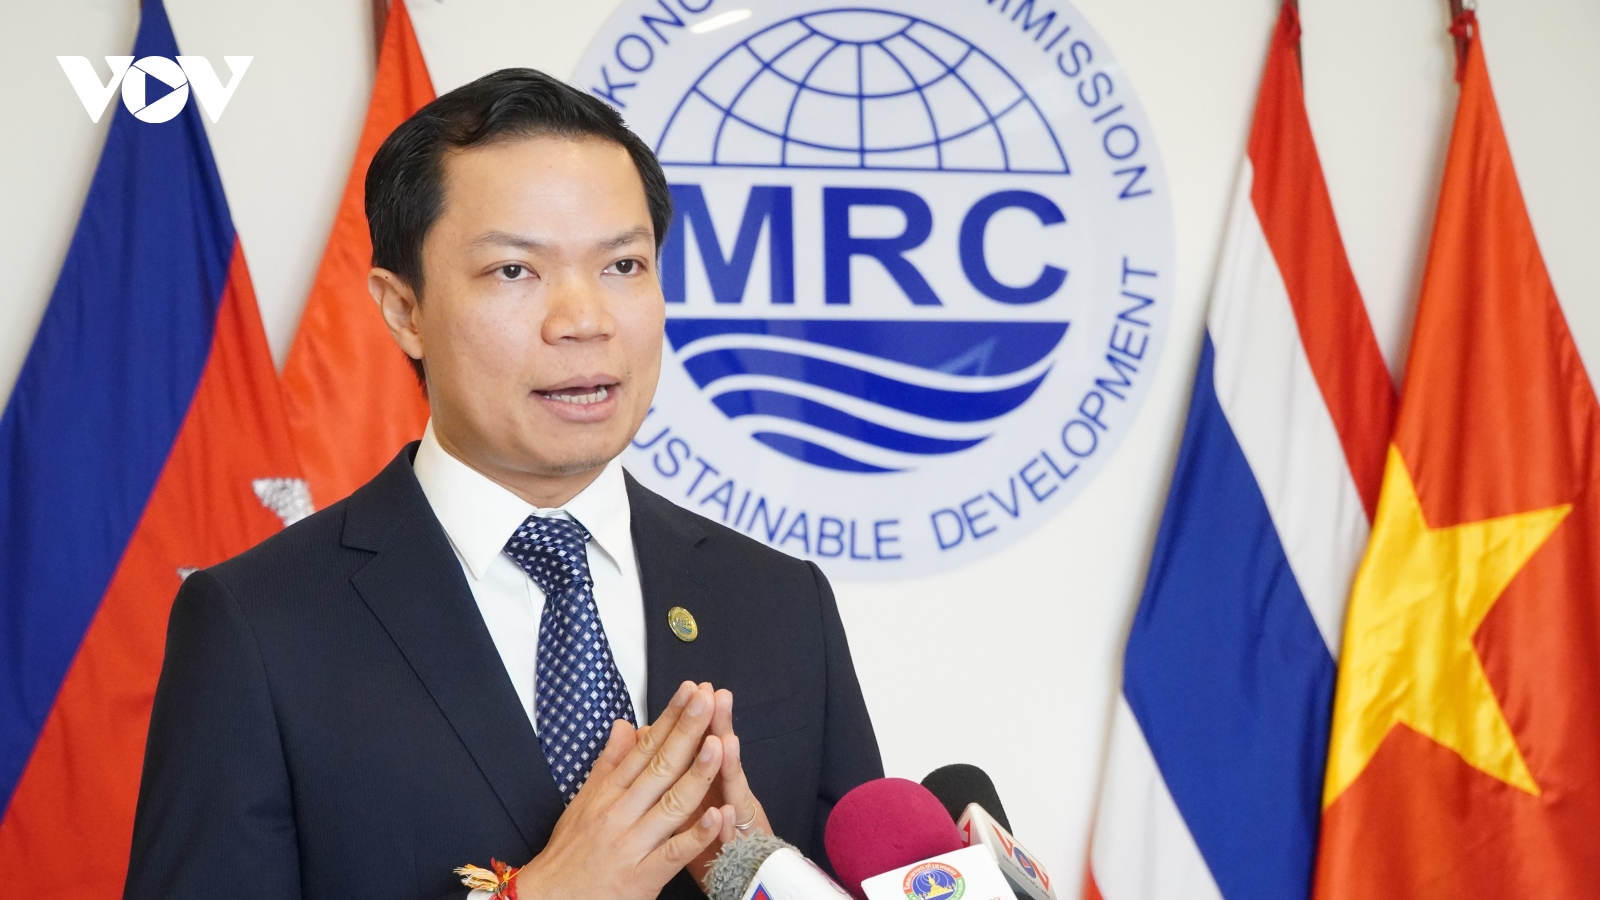 MRC ra mắt kênh dự báo lũ lụt và hạn hán cho người dân lưu vực sông Mekong